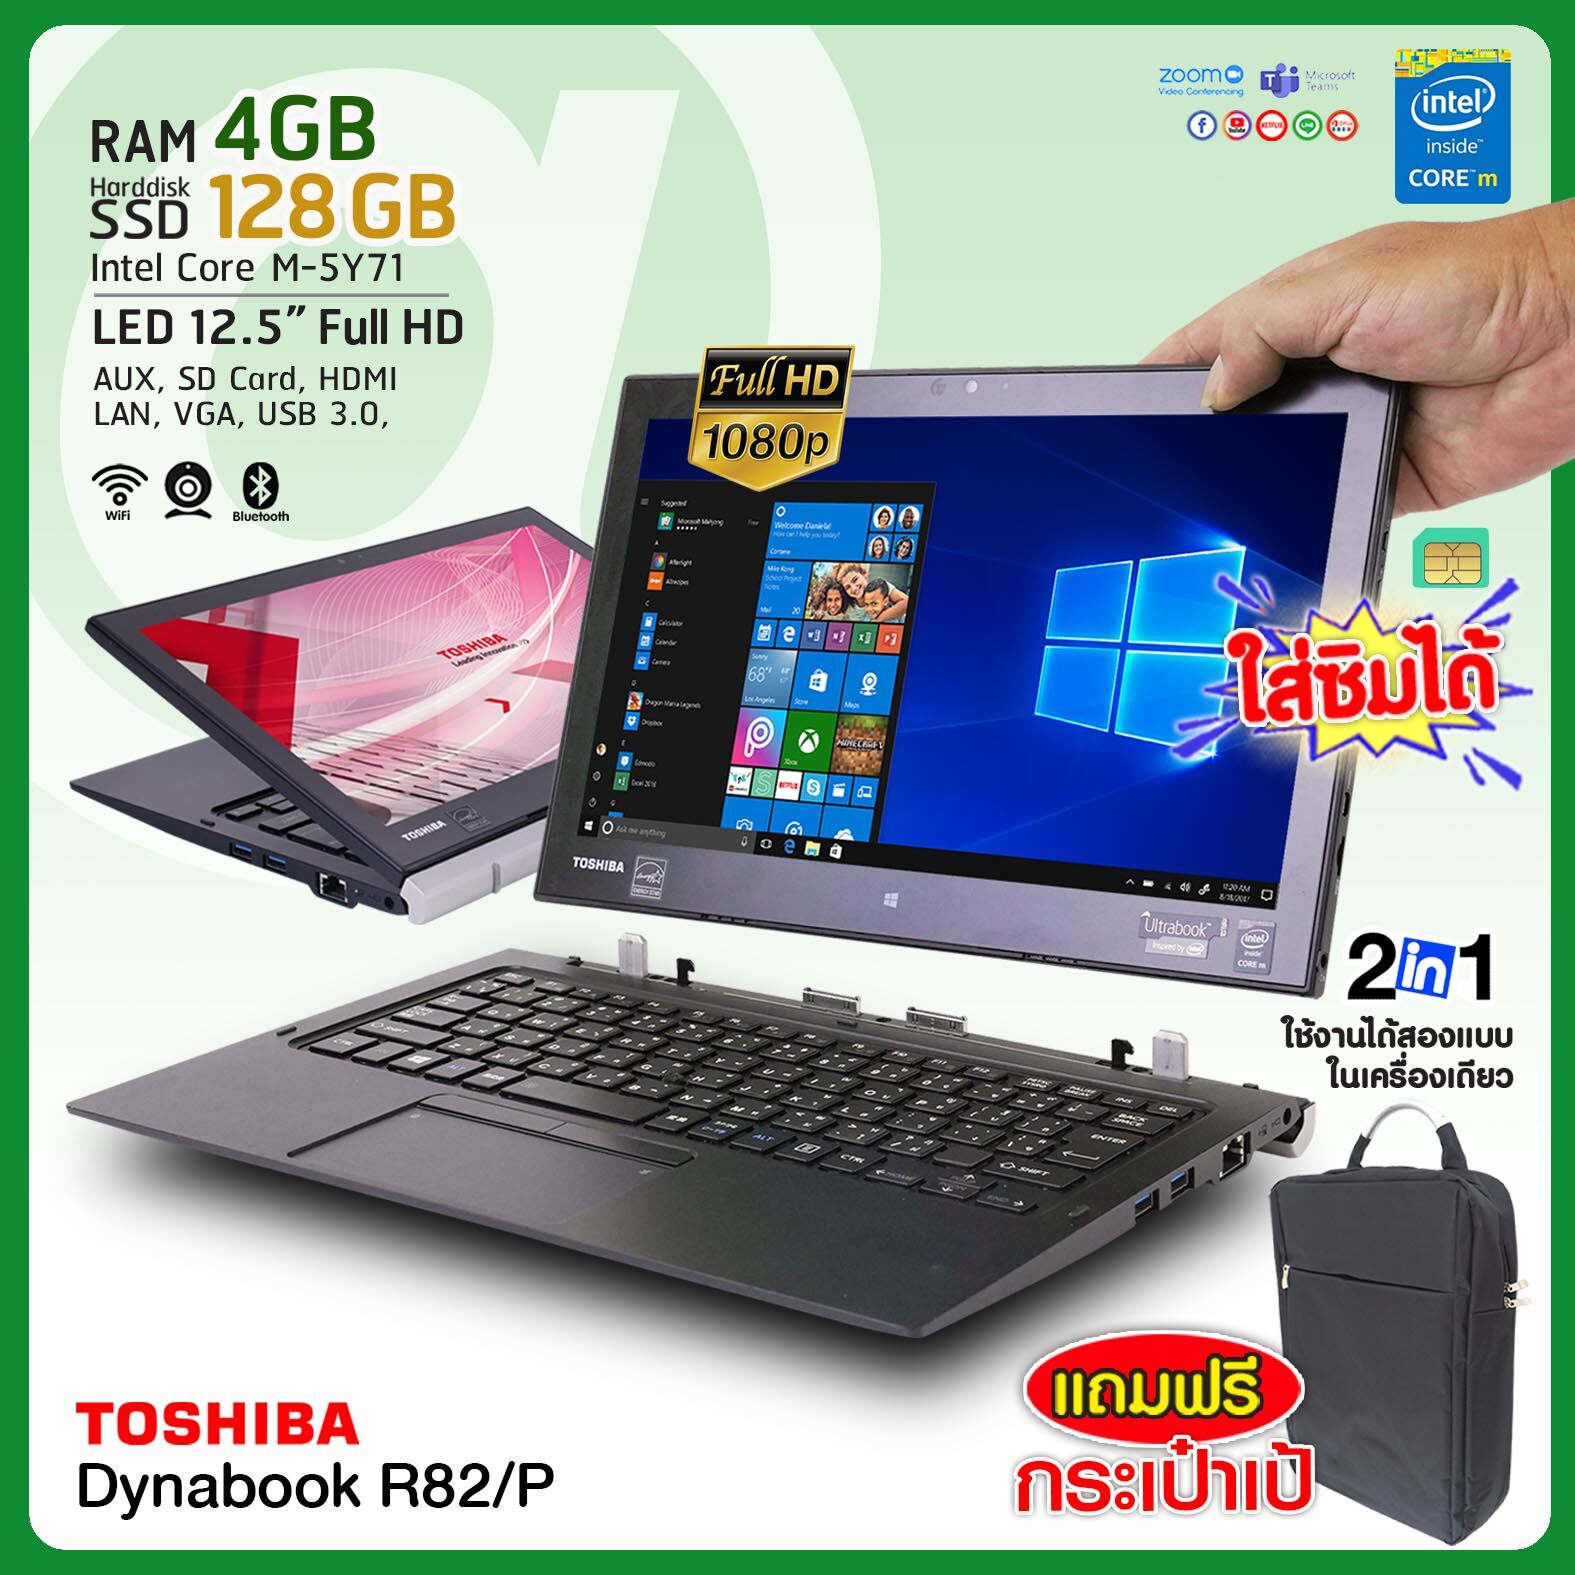 โน๊ตบุ๊ค Toshiba Dynabook R82/P Core m / RAM 4GB / SSD 128GB